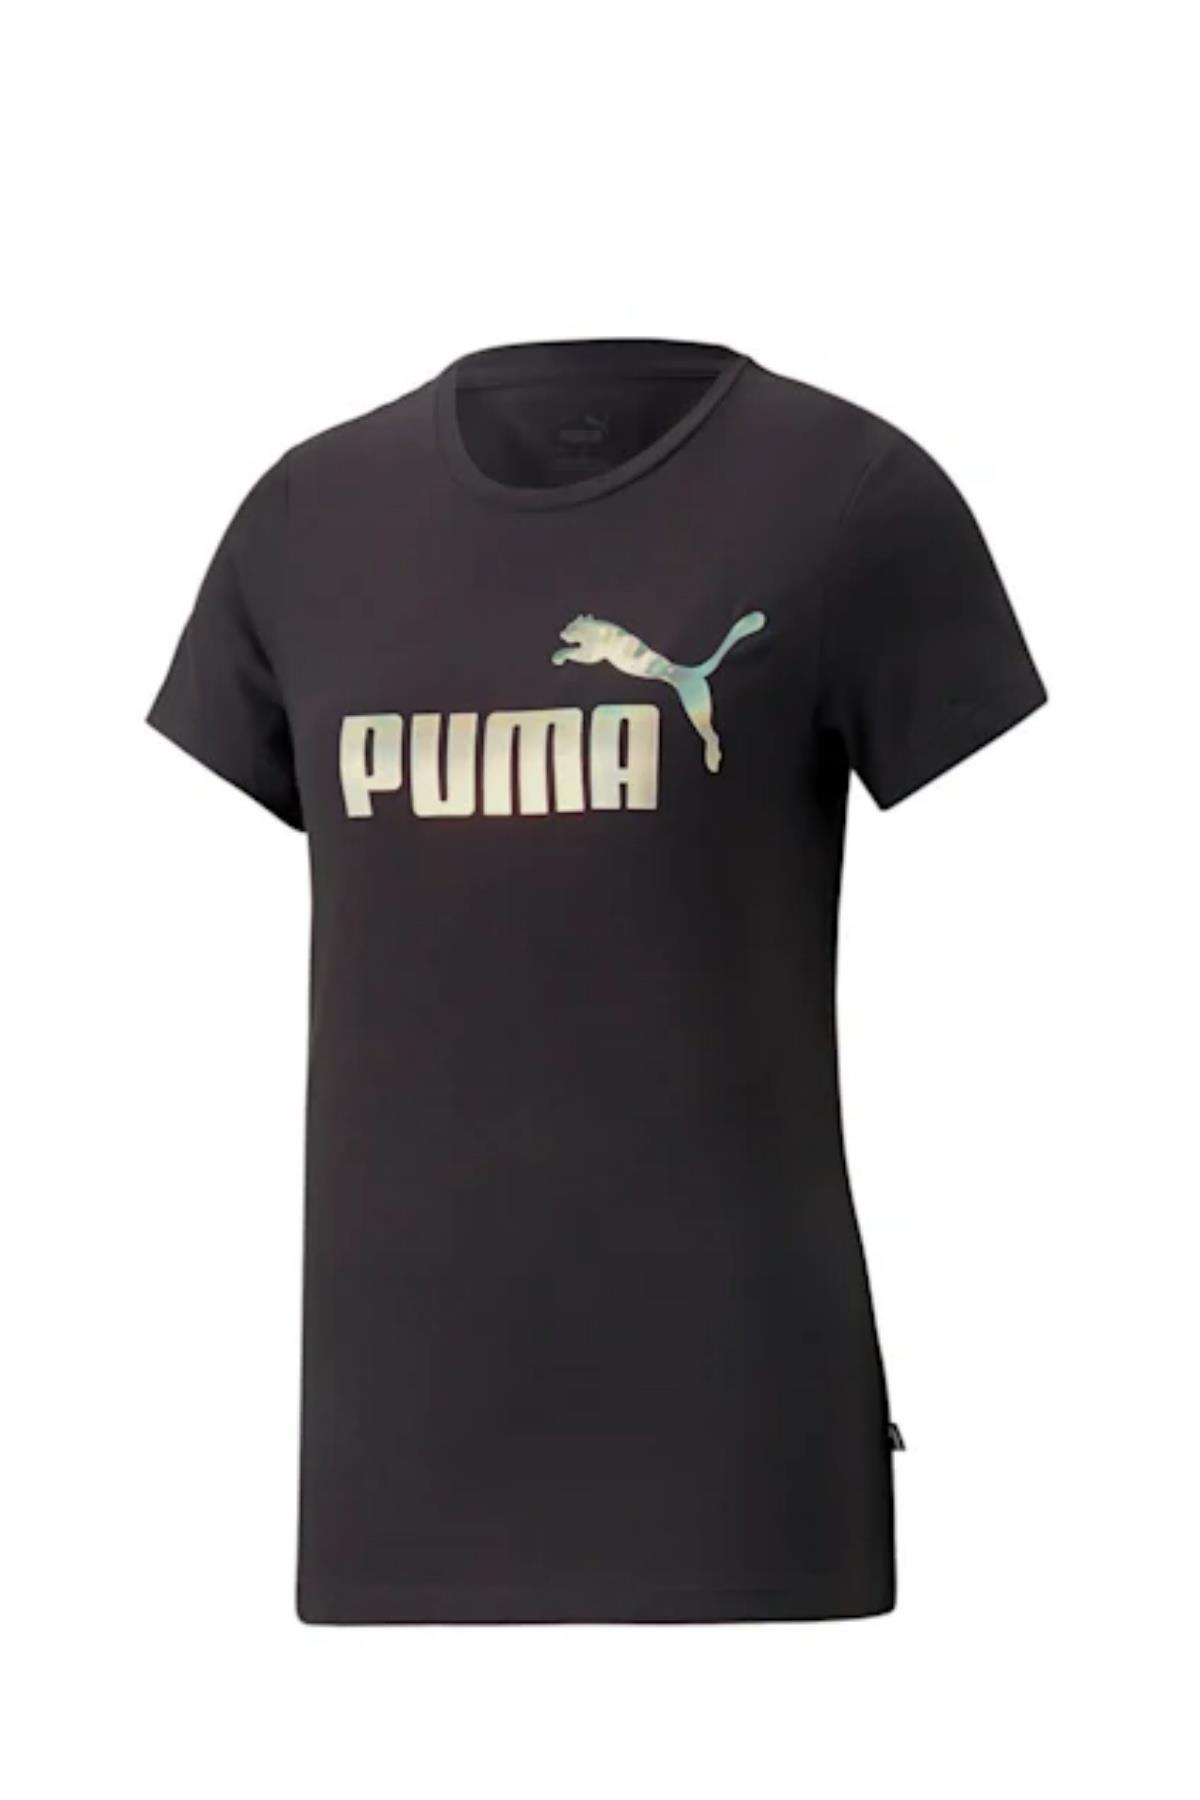 Puma Ess+ Nova Shıne Kadın Tişört 67444801